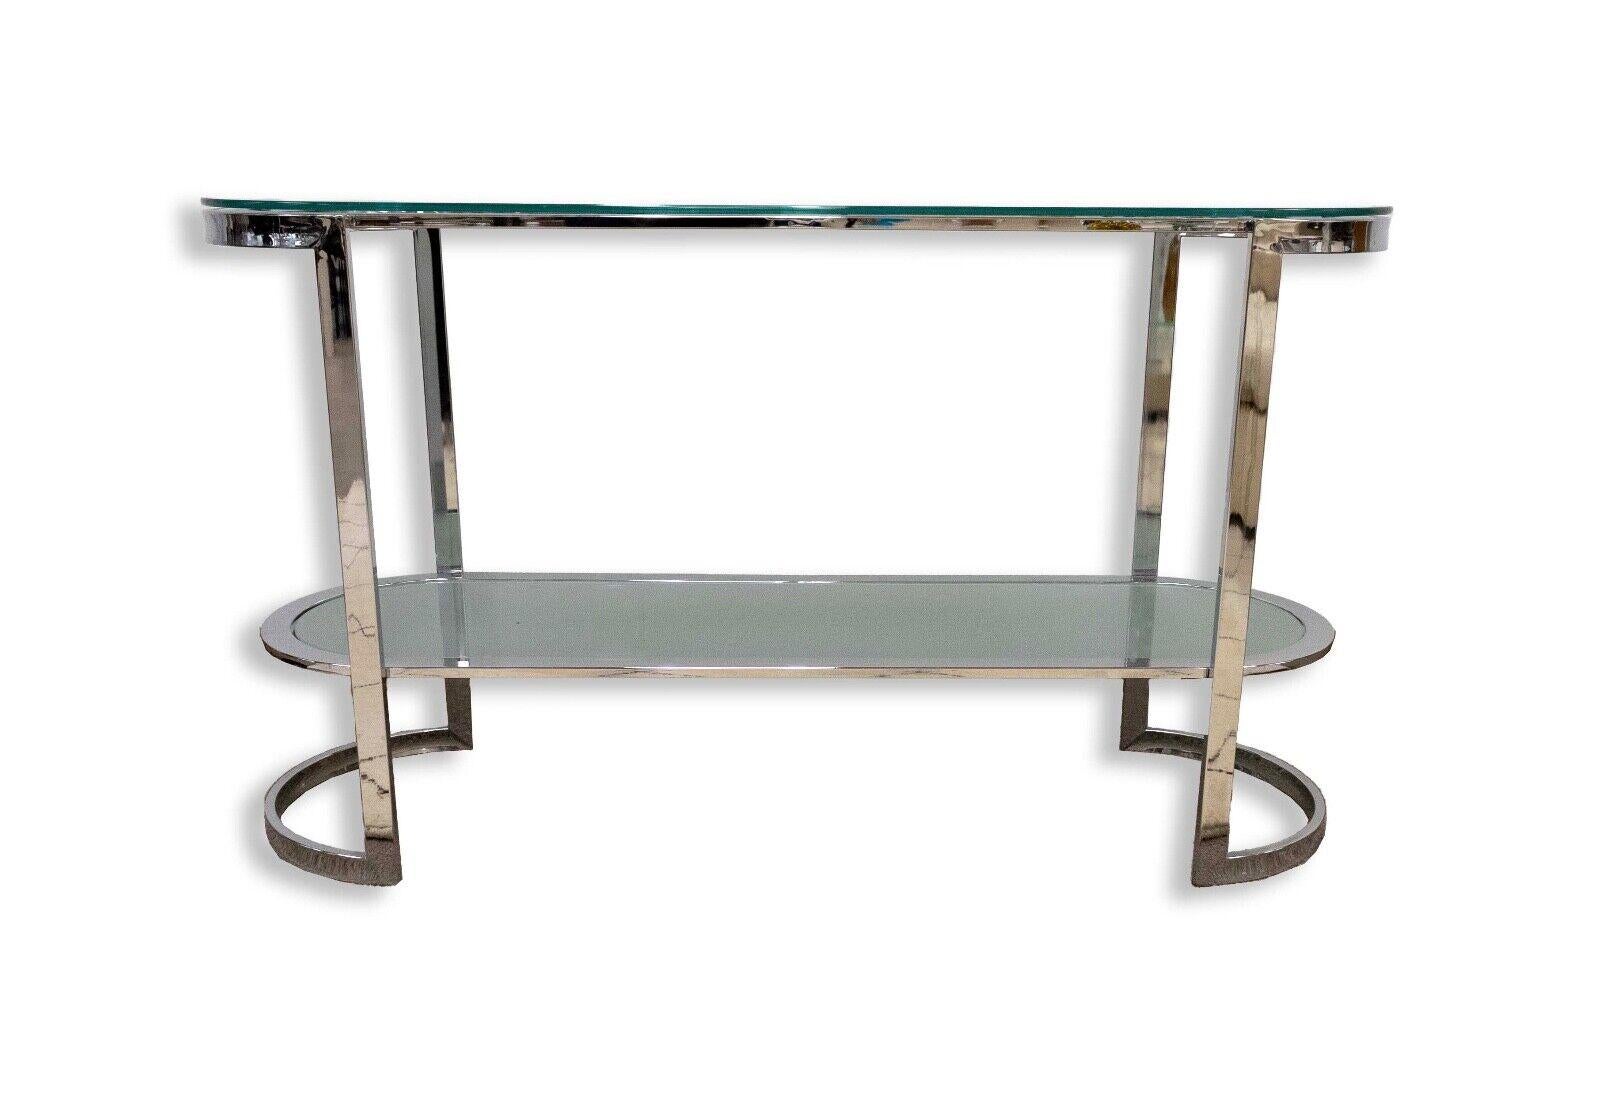 Notre table console en verre et chrome incurvé est un mélange étonnant de forme et de fonction. Cette pièce moderne contemporaine incarne l'élégance élégante et le design audacieux, ce qui en fait un ajout frappant à tout espace de vie. Artistics